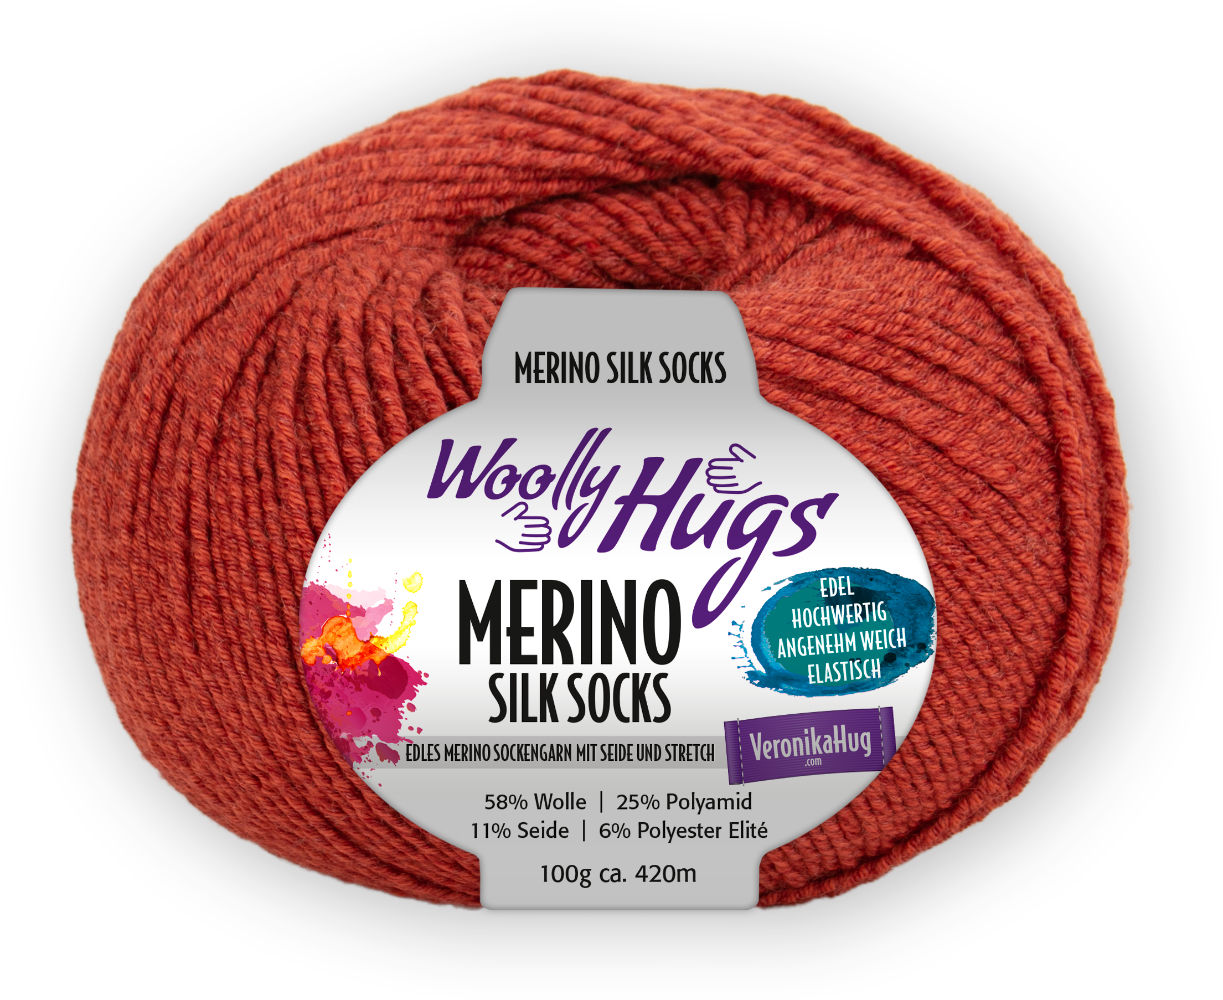 Merino Silk Socks Stretch, 4-fach von Woolly Hugs 0227 - ziegel